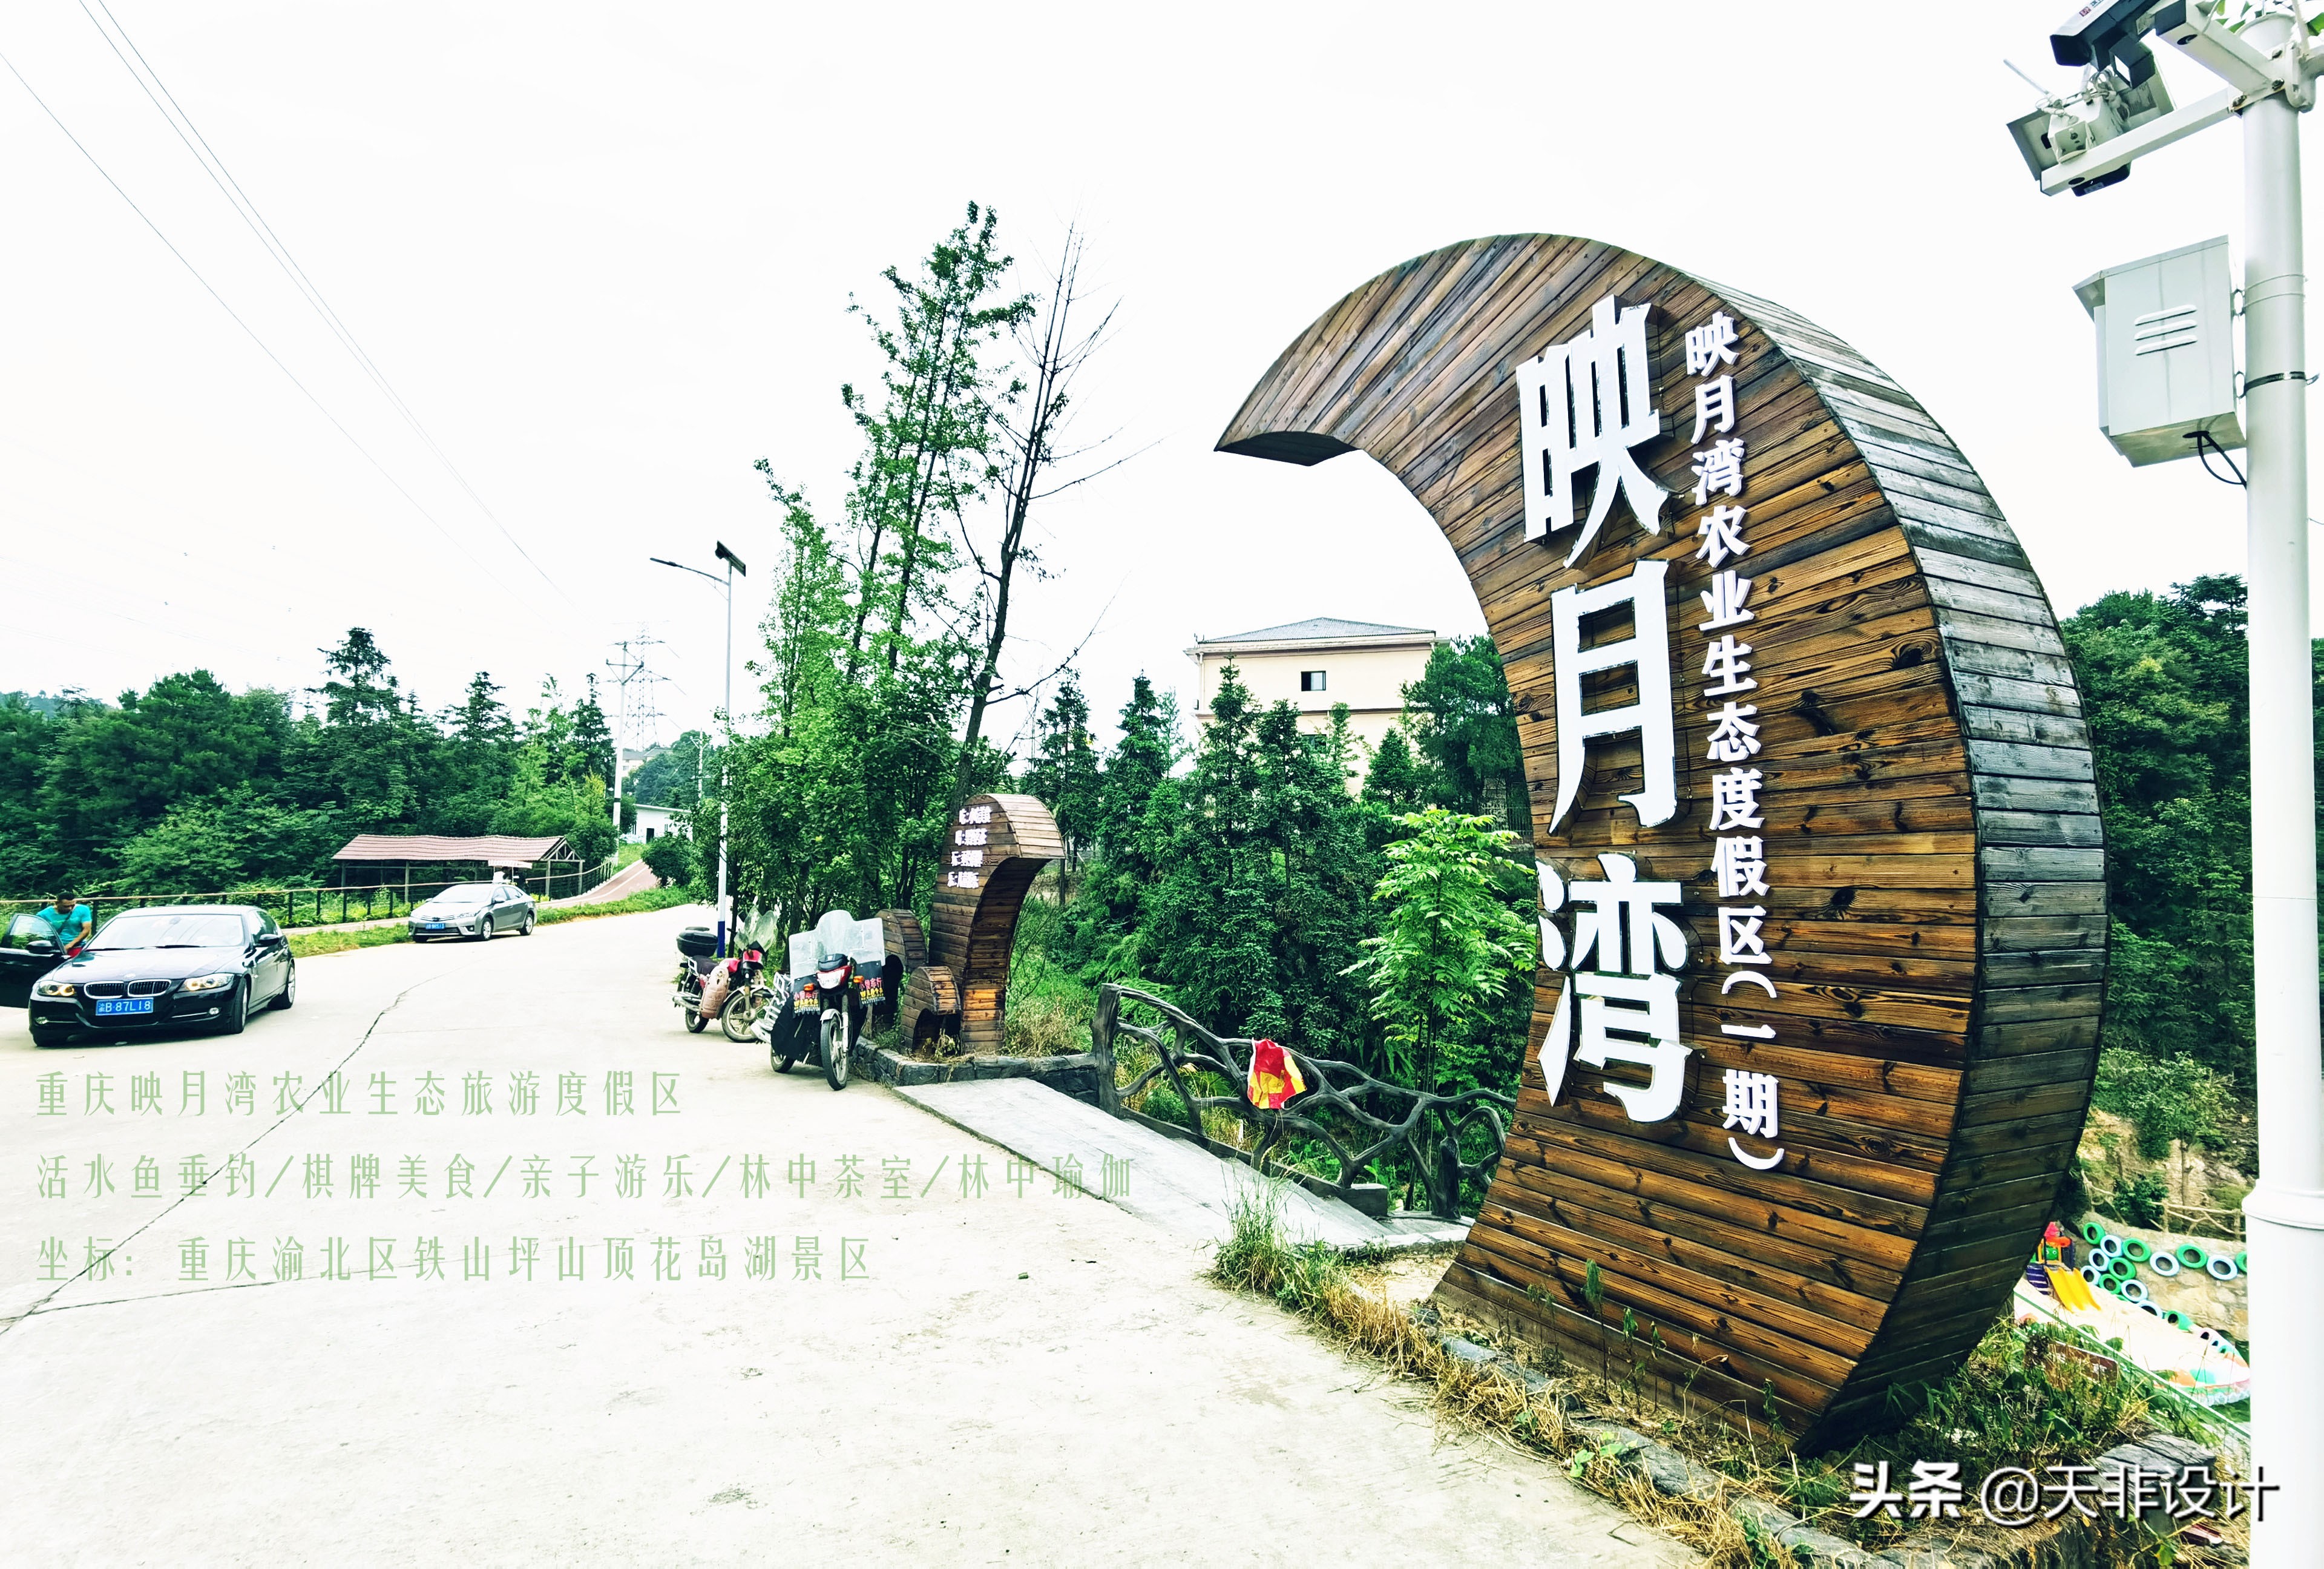 映月湾度假区｜重庆映月湾农业生态度假区，亲子游乐的好地方